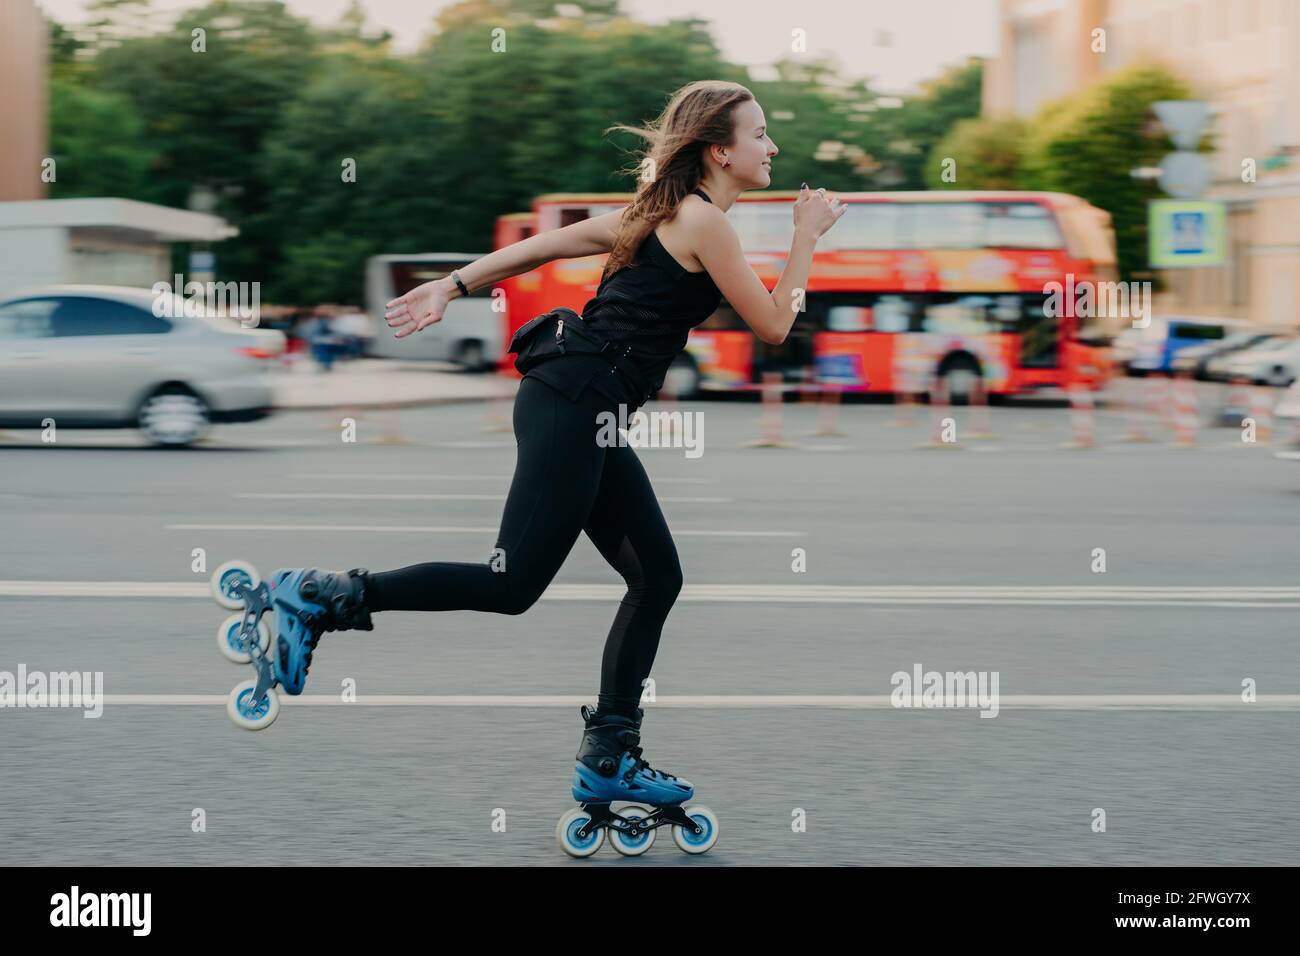 Efectivamente regalo Retirarse Mujer en patines de rodillos con ruedas rollerblades durante el día de  verano en una carretera ajetreada con el transporte lleva el estilo de vida  activo se viste negro ropa deportiva Fotografía